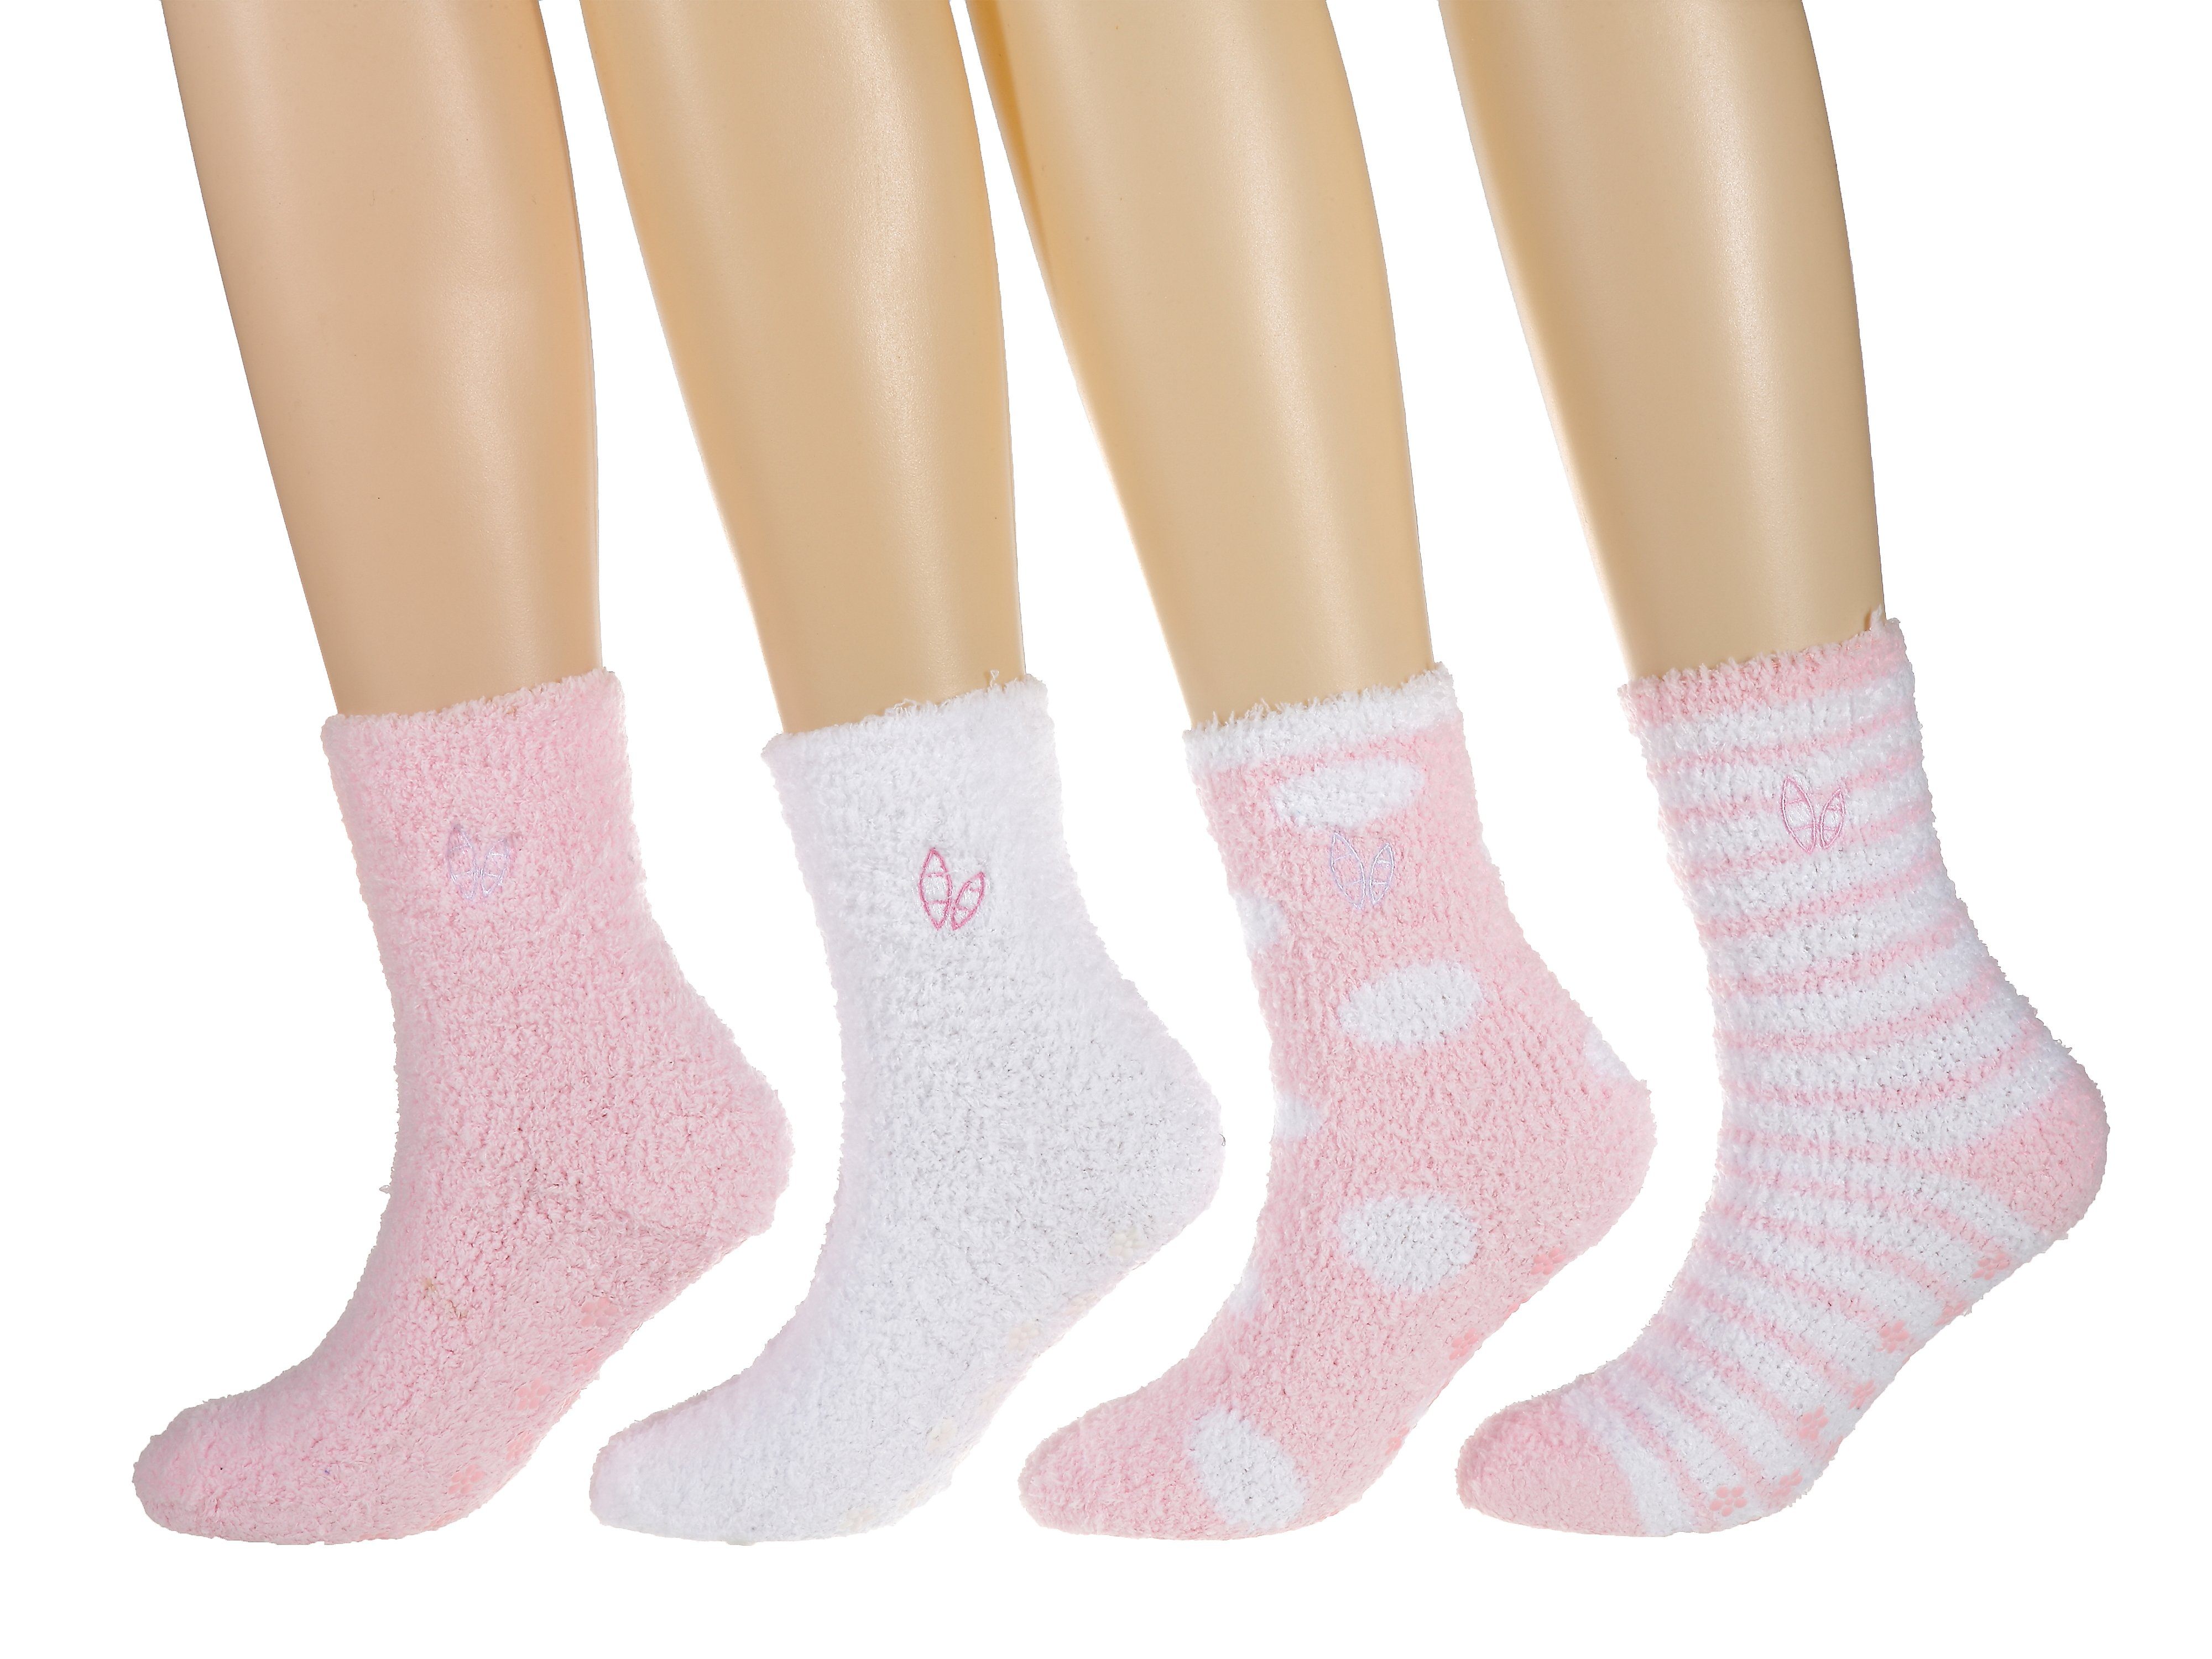 Women's (4 Pairs) Soft Anti-Skid Fuzzy Winter Crew Socks